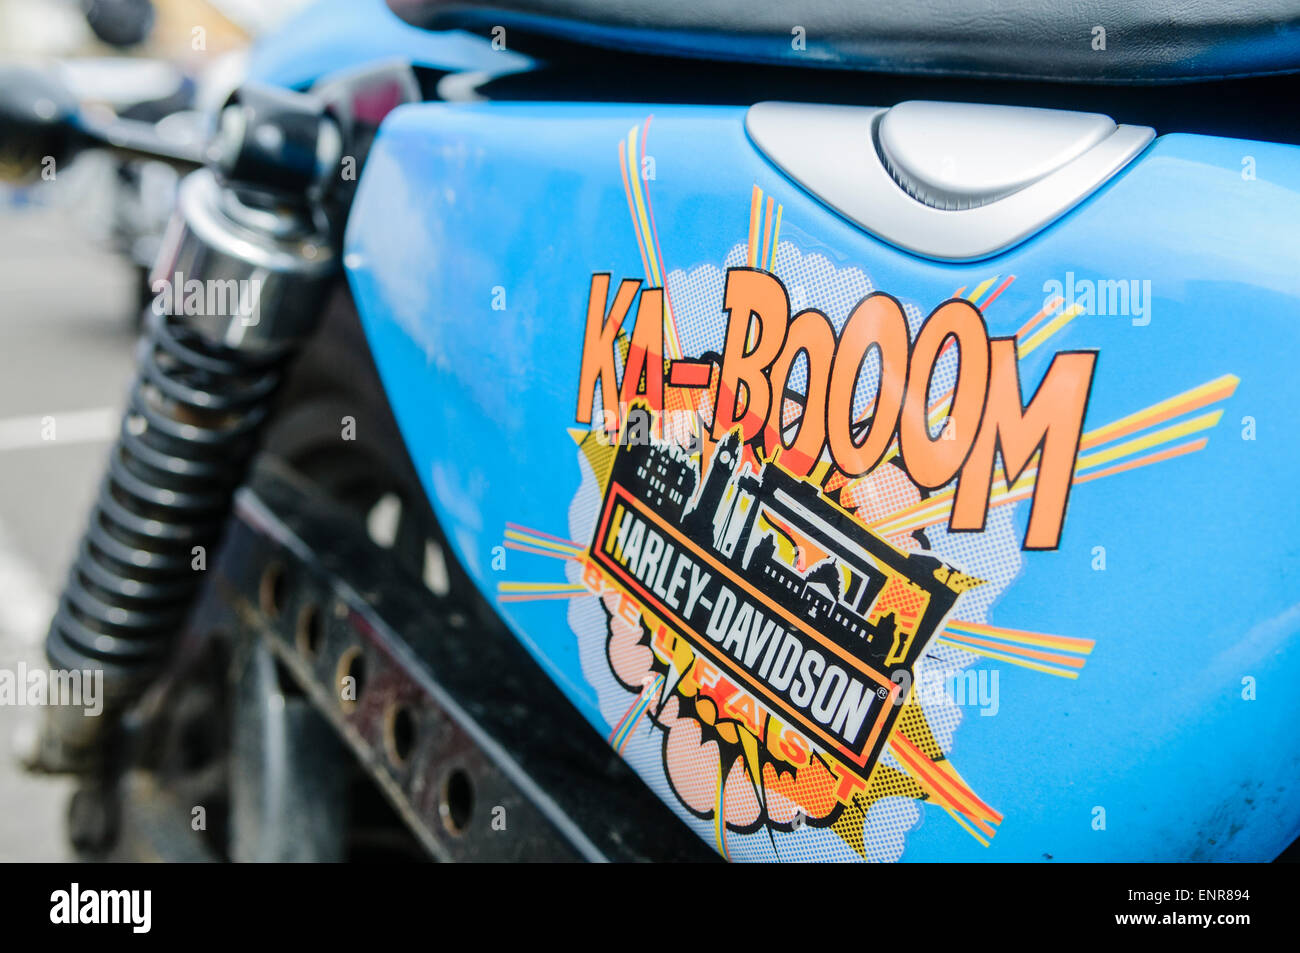 Harley Davidson avec peinture personnalisée travailler avec 'ka-booom' style bande dessinée détail Banque D'Images